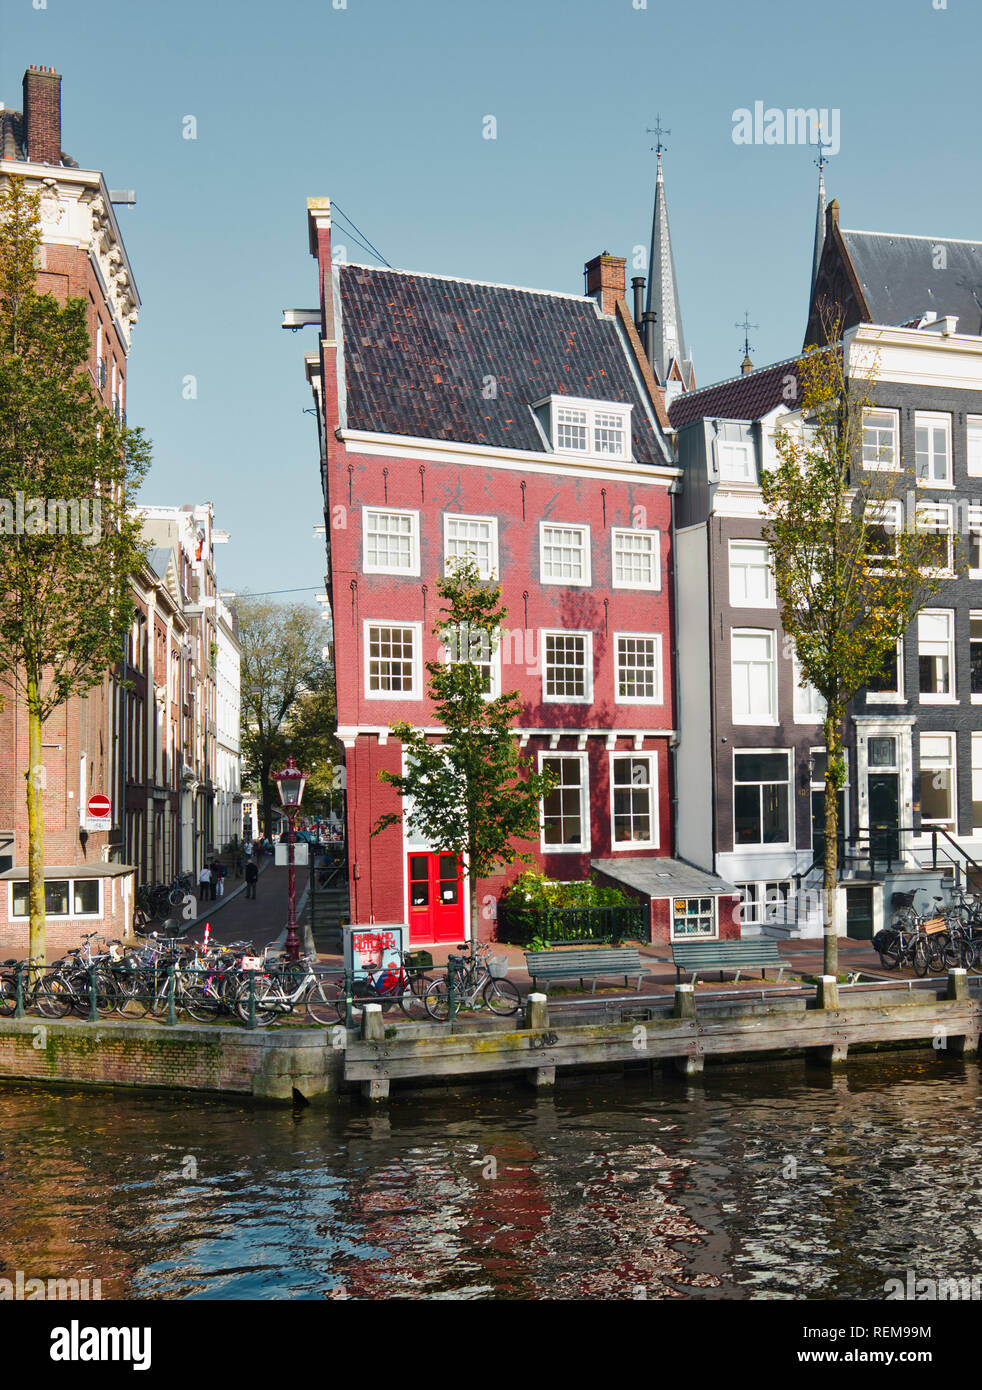 Case sul canale, tipica architettura Olandese, Prinsengracht Amsterdam, Olanda, Europa Foto Stock